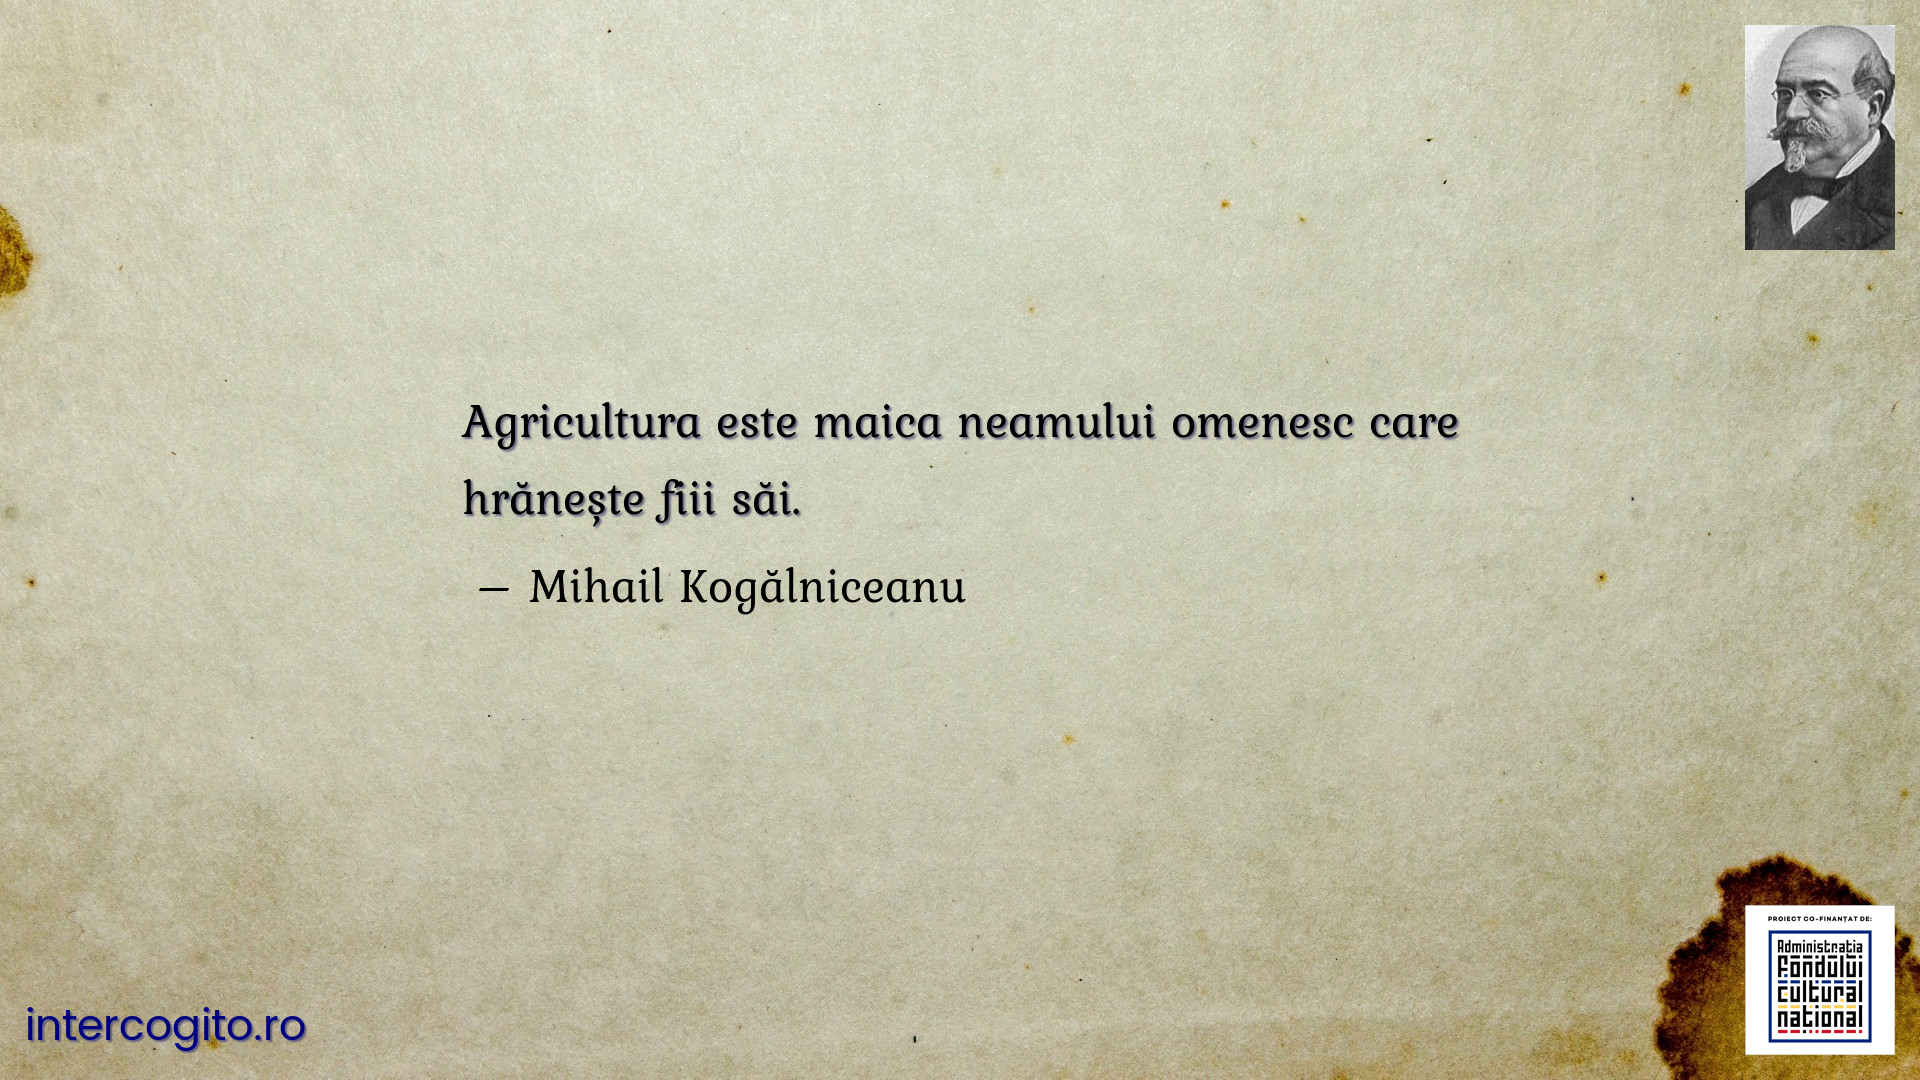 Agricultura este maica neamului omenesc care hrănește fiii săi.